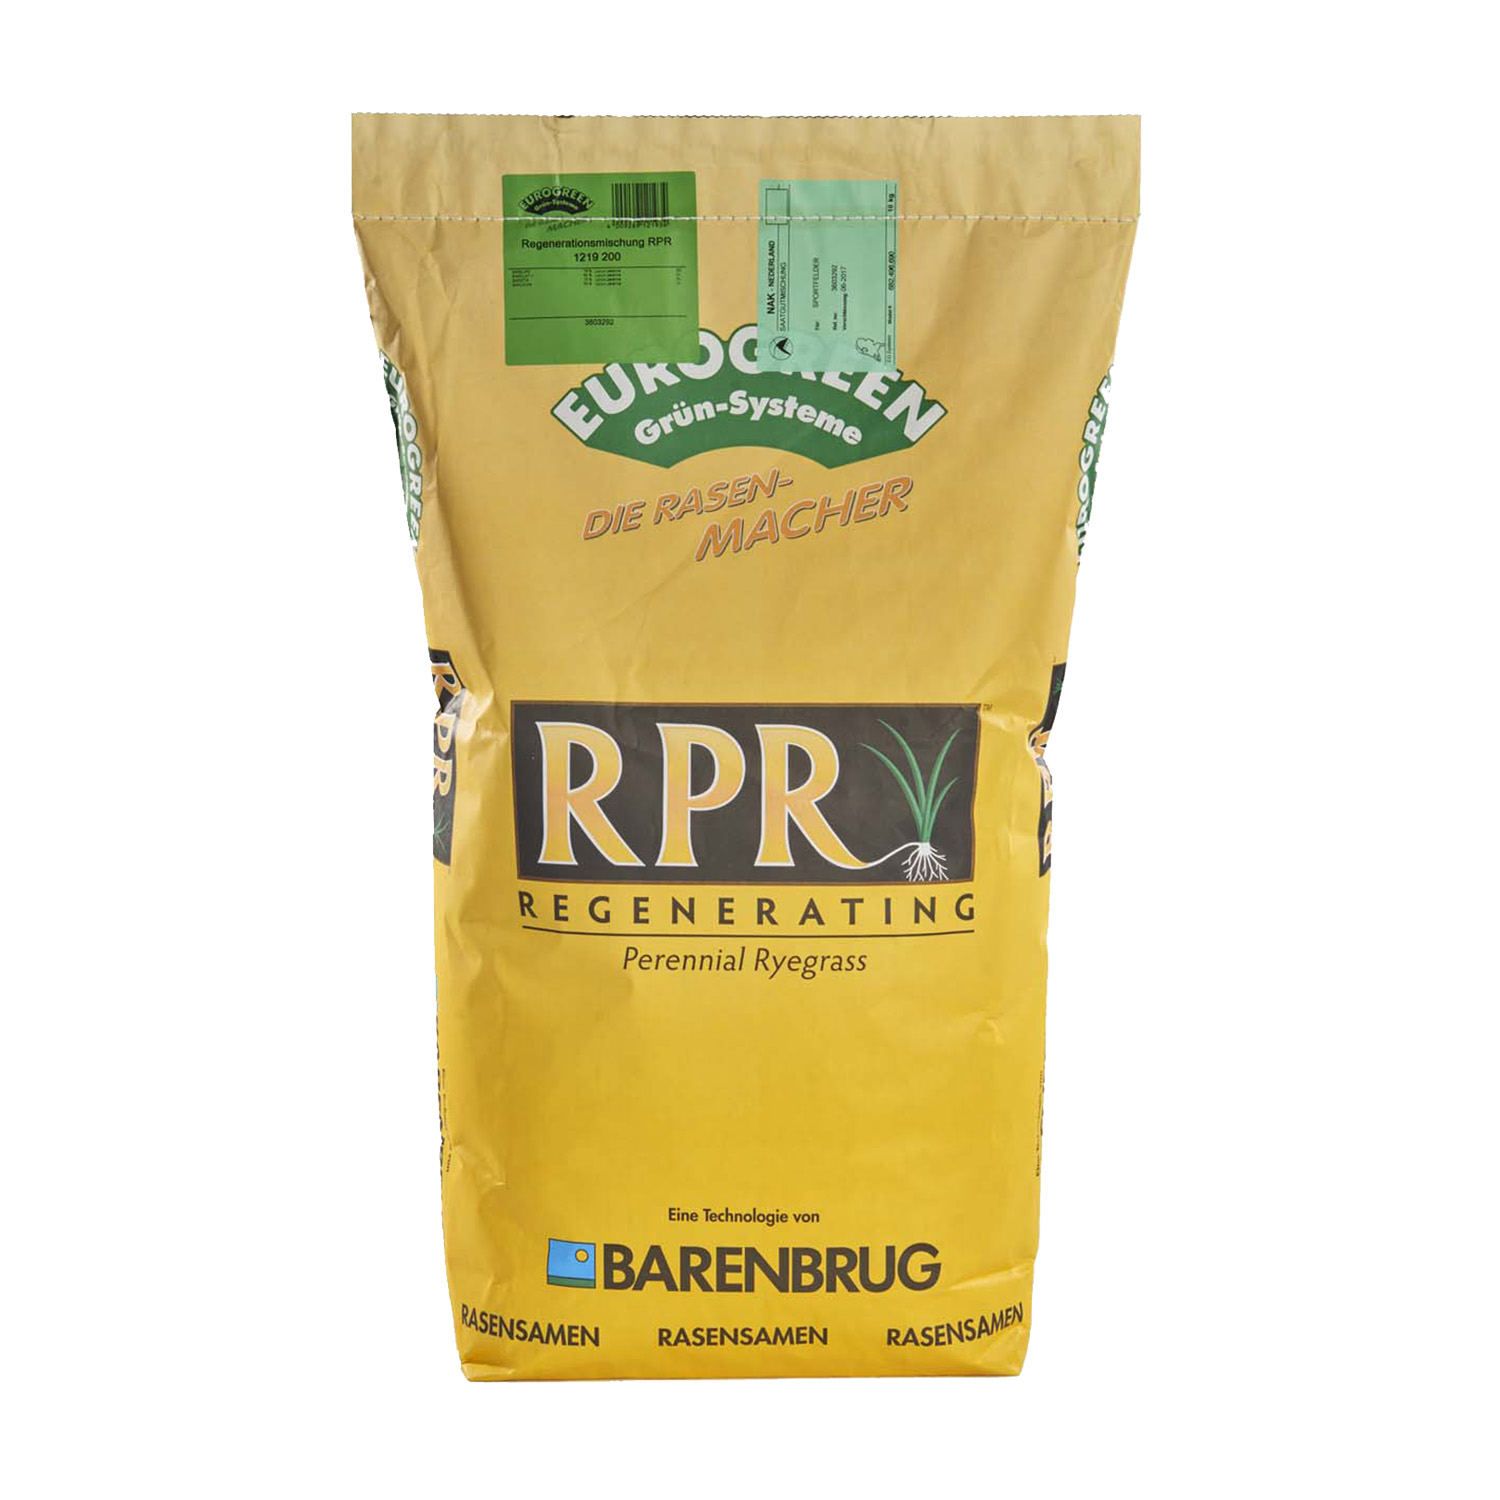 Die Sportrasen-Mischung RPR ist eine Rasensaatgutmischung mit ausläufertreibendem Deutschem Weidelgras